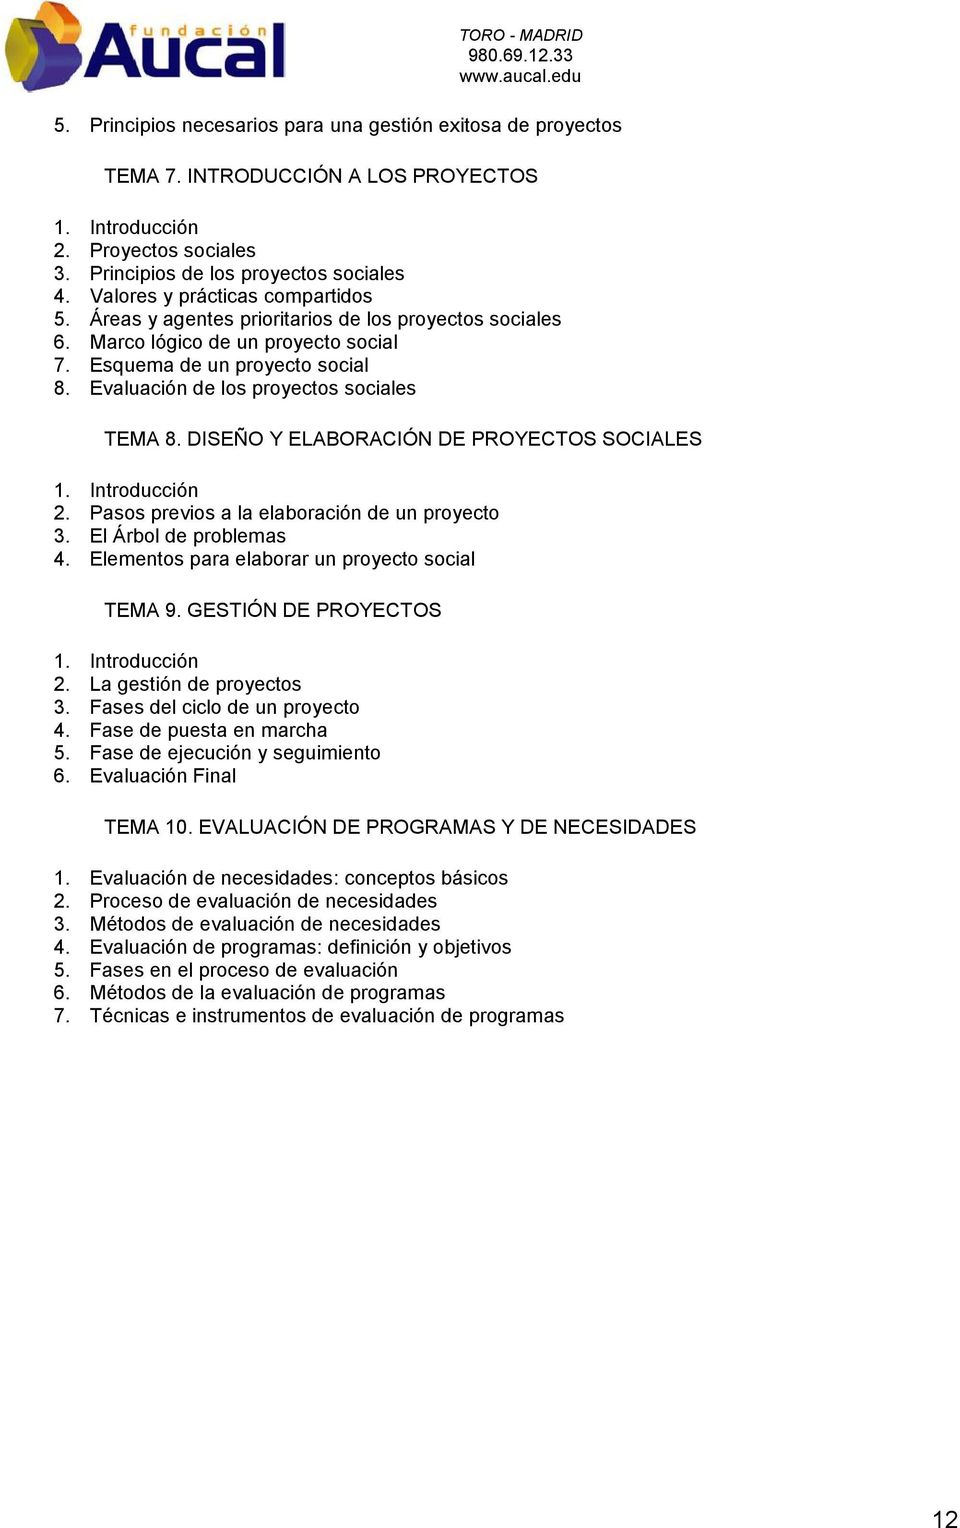 DISEÑO Y ELABORACIÓN DE PROYECTOS SOCIALES 2. Pasos previos a la elaboración de un proyecto 3. El Árbol de problemas 4. Elementos para elaborar un proyecto social TEMA 9. GESTIÓN DE PROYECTOS 2.